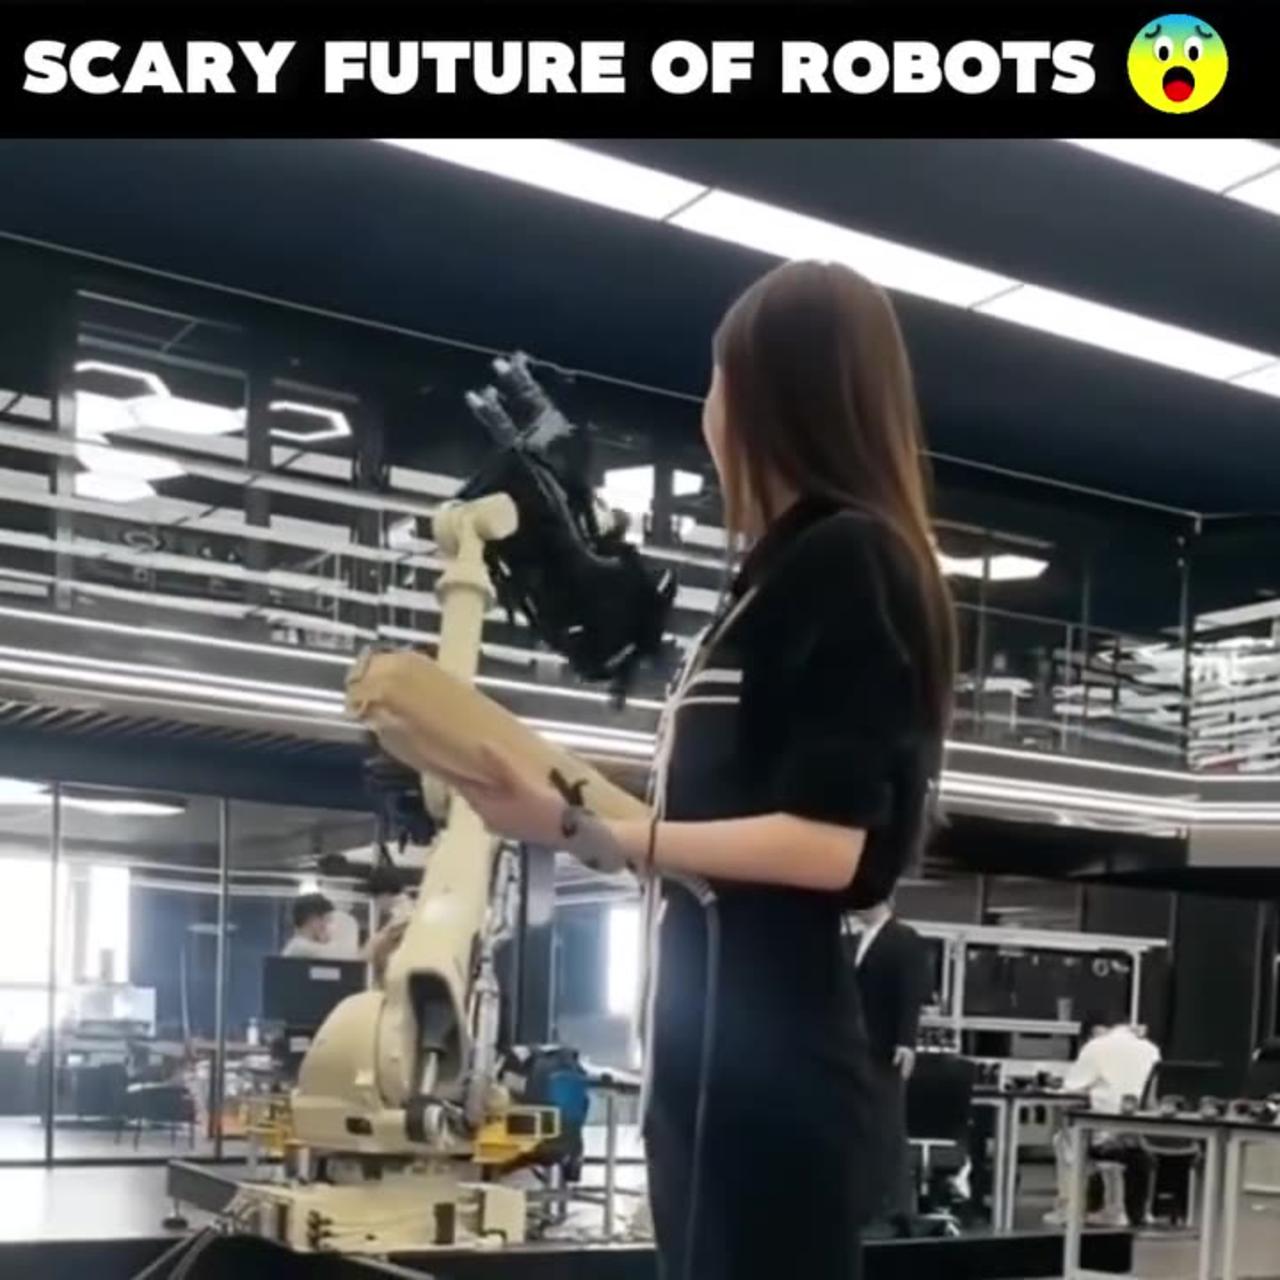 Spaventoso futuro dei robot 😲